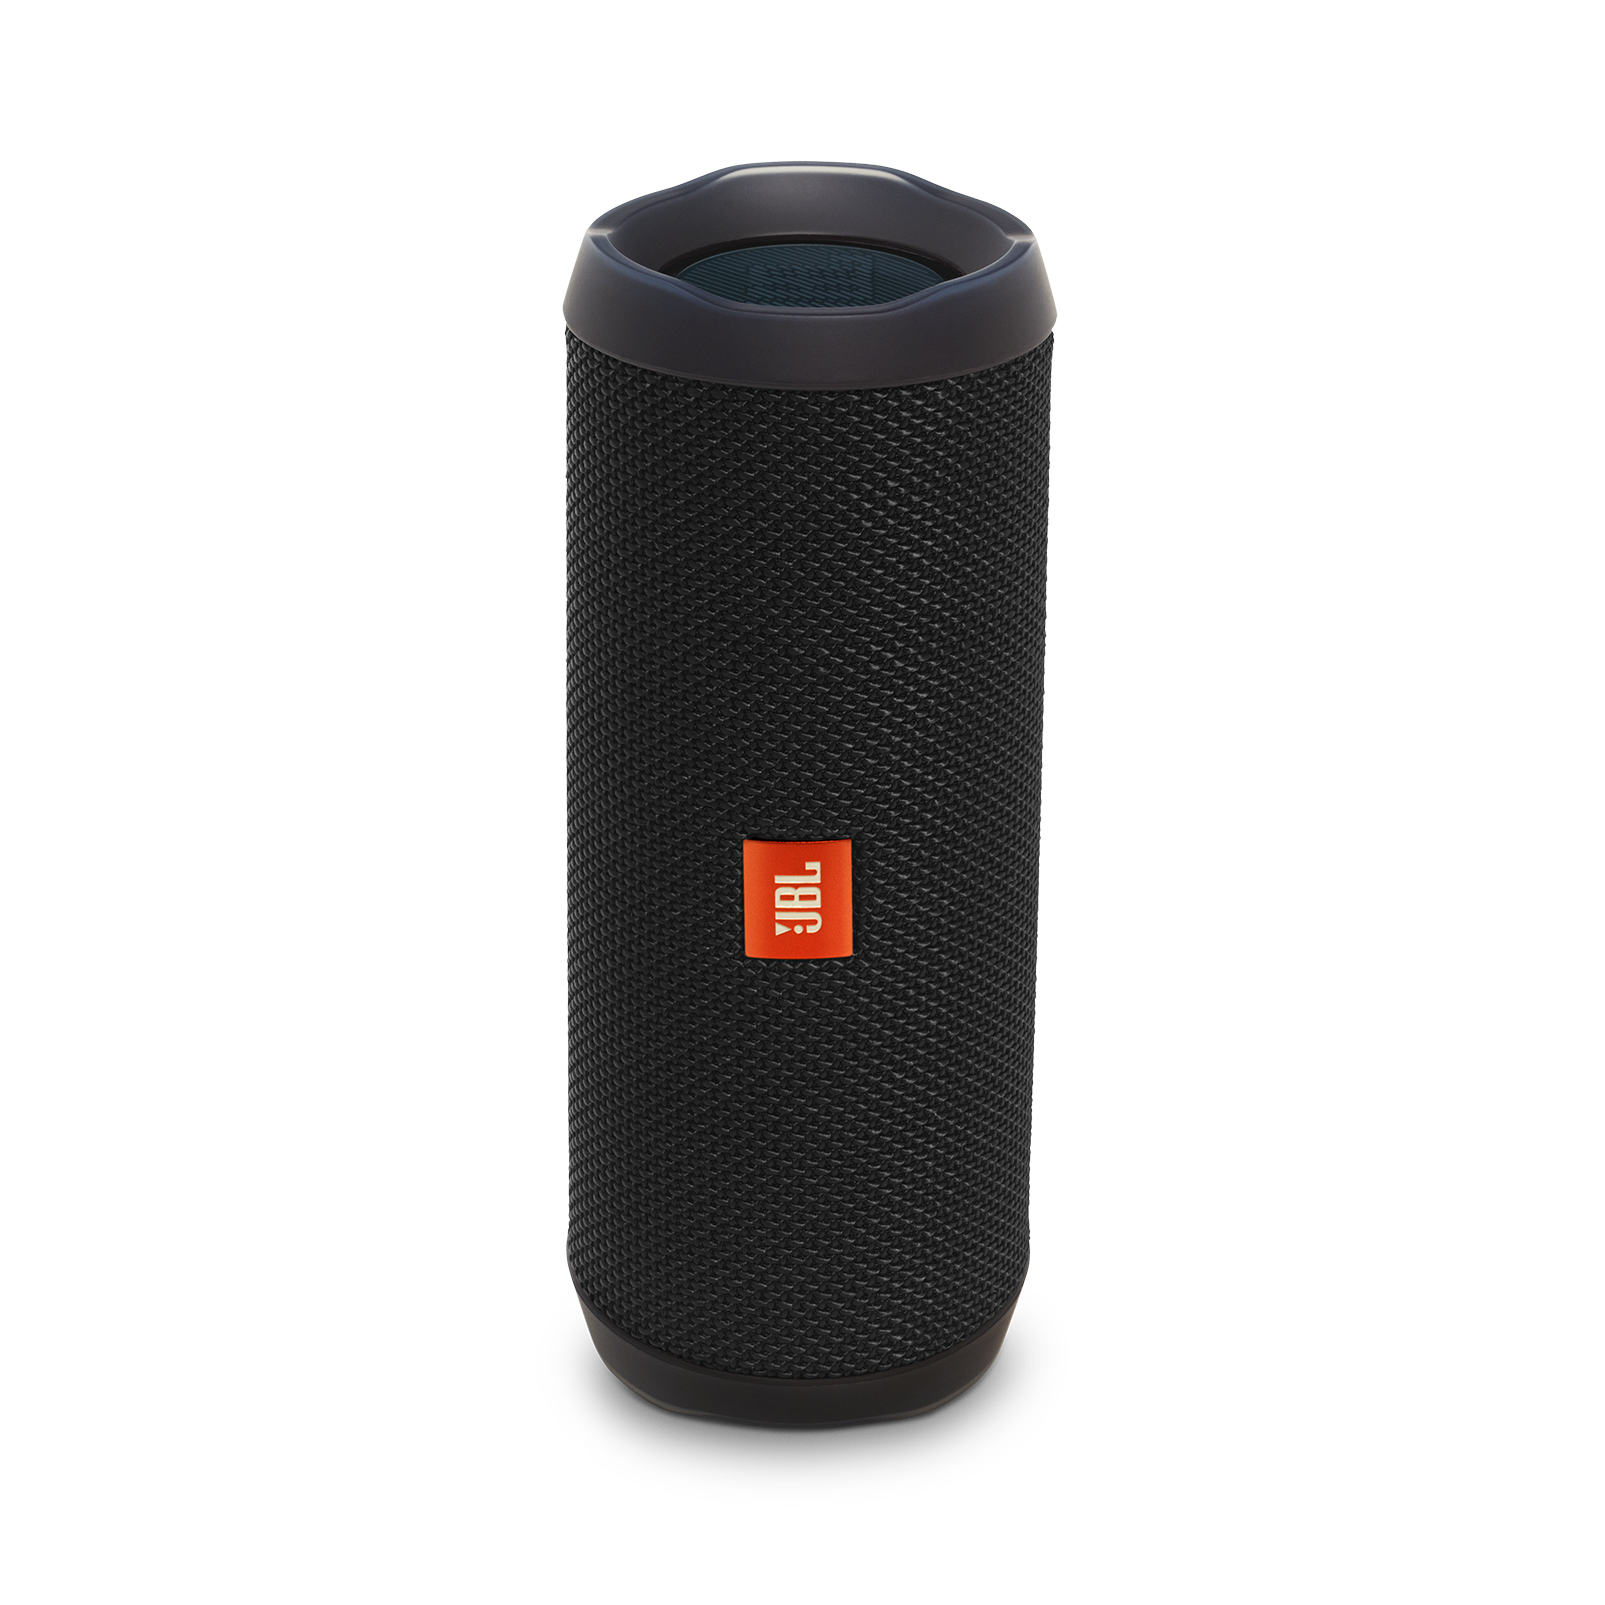 jbl waterproof portable bluetooth speaker